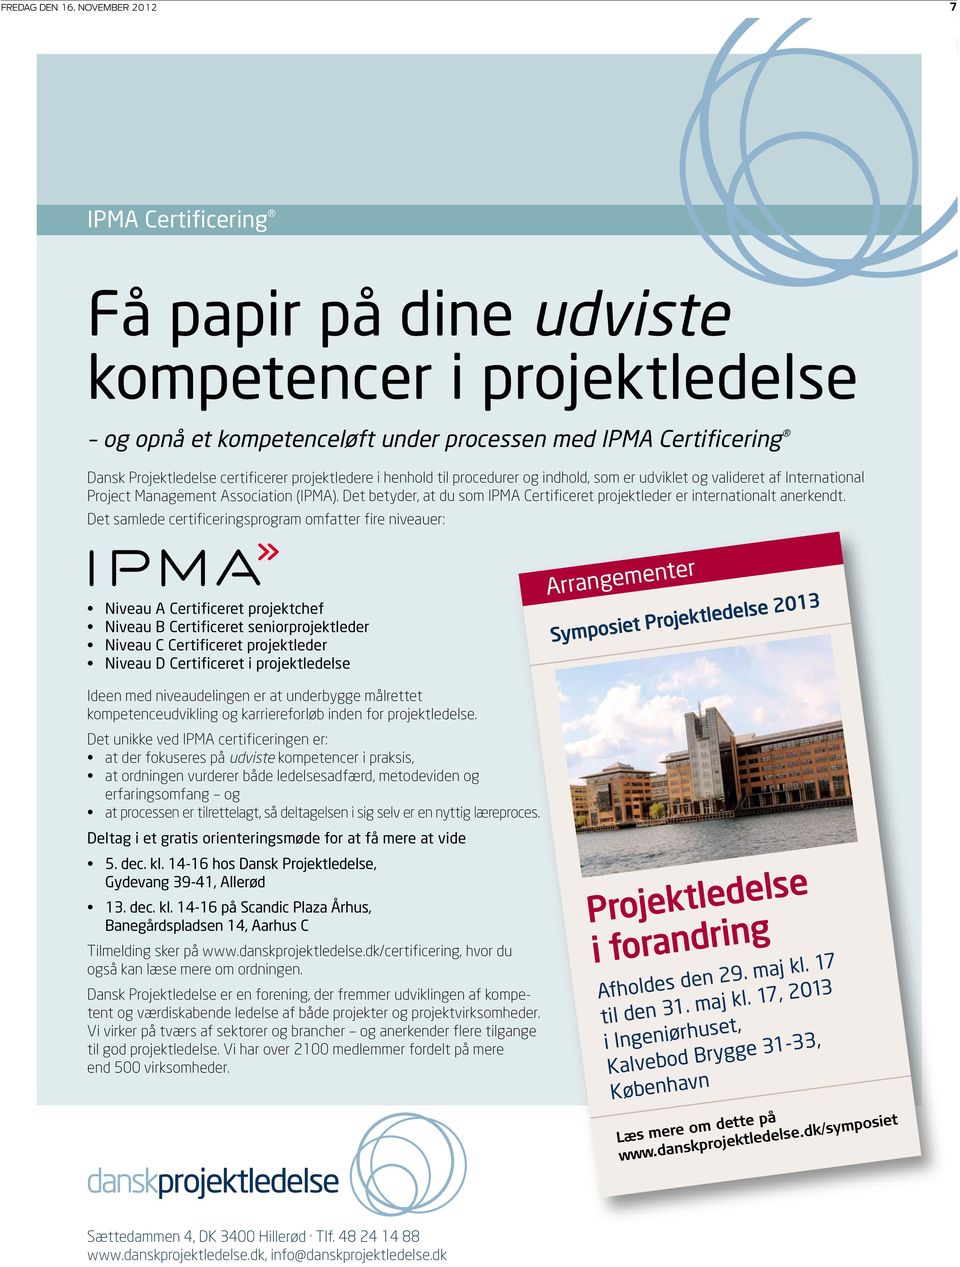 projektledere i henhold til procedurer og indhold, som er udviklet og valideret af International Project Management Association (IPMA).